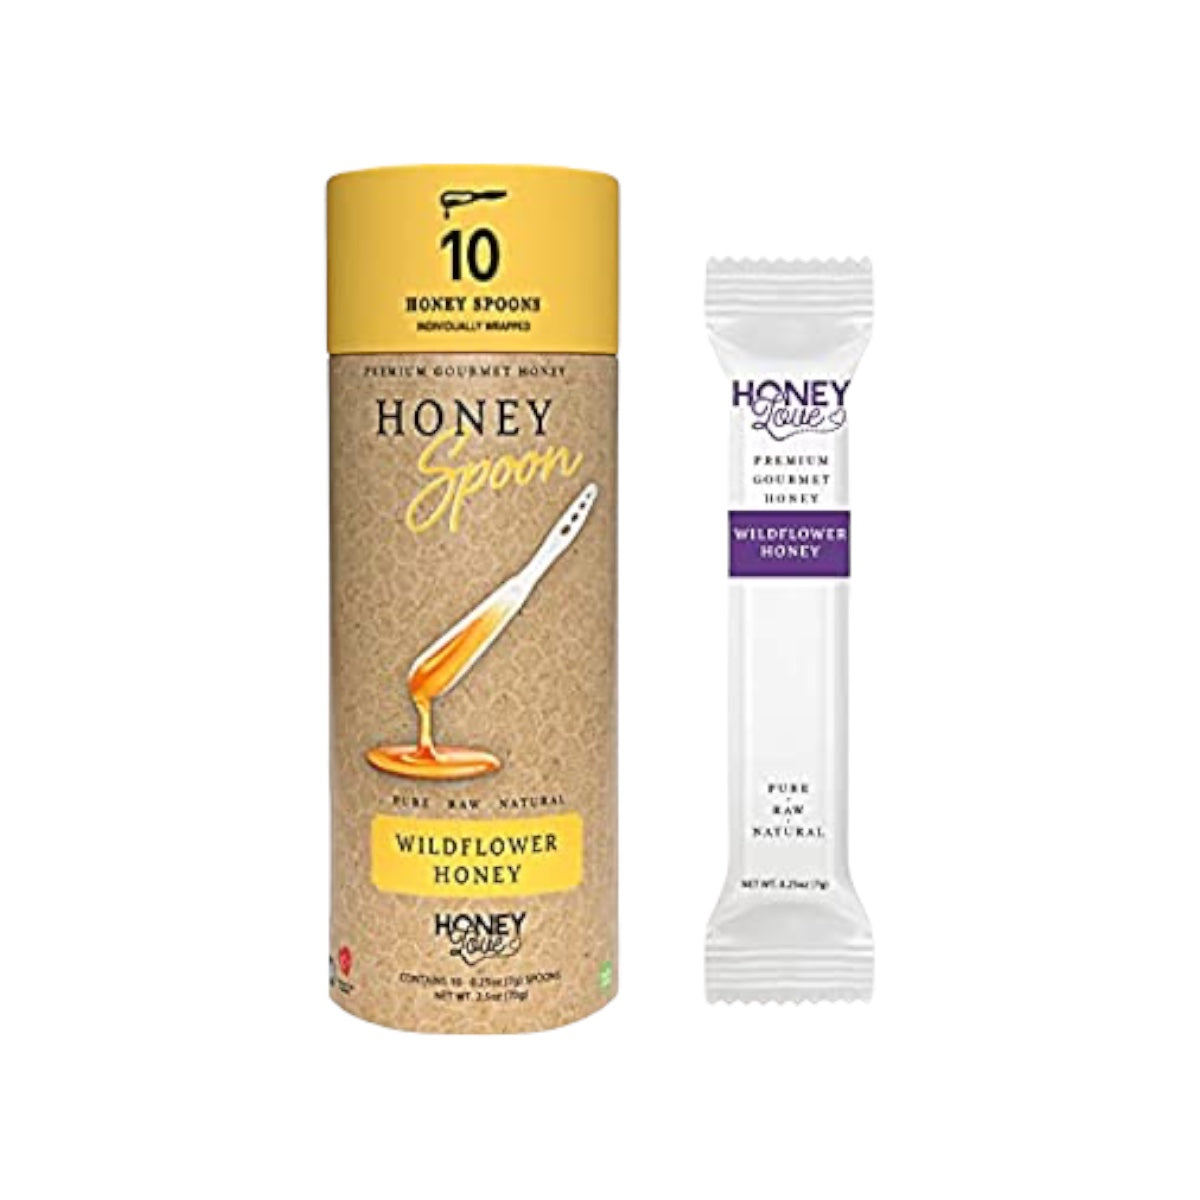 Honey Love - 10 Honey Spoons – Cúrcuma®